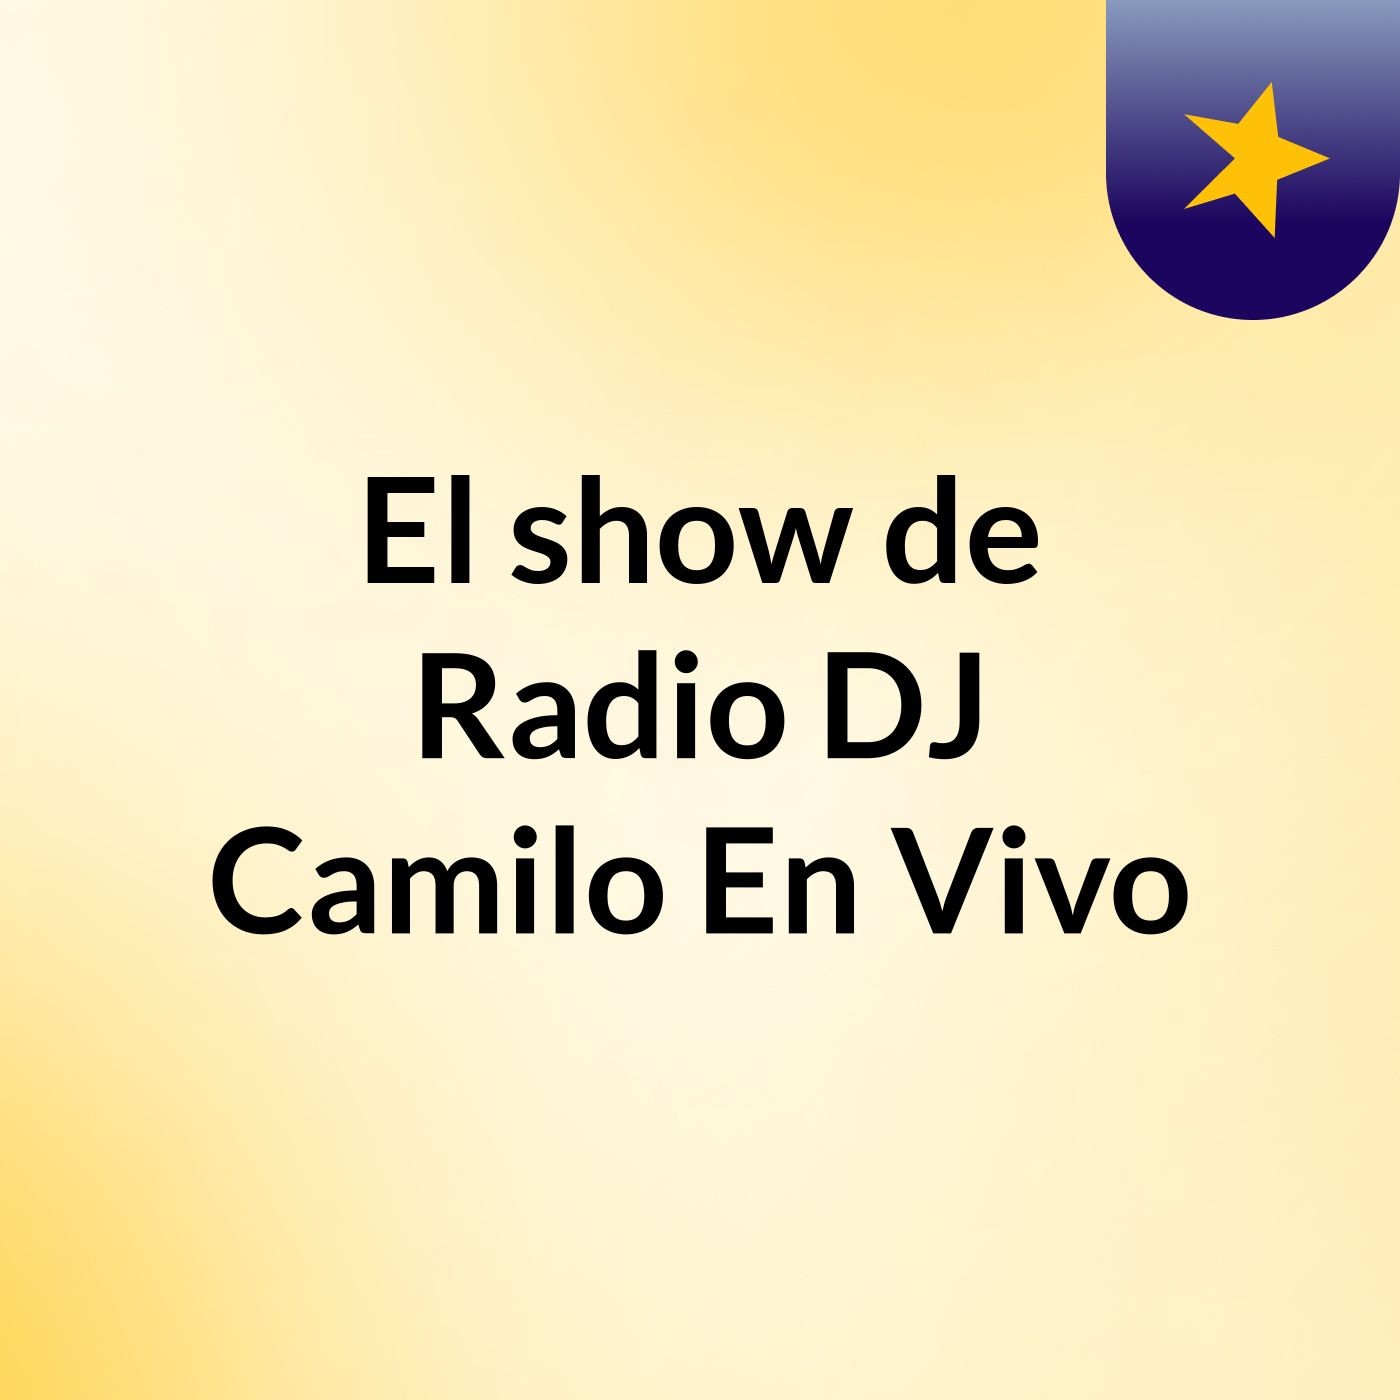 El show de Radio DJ Camilo En Vivo